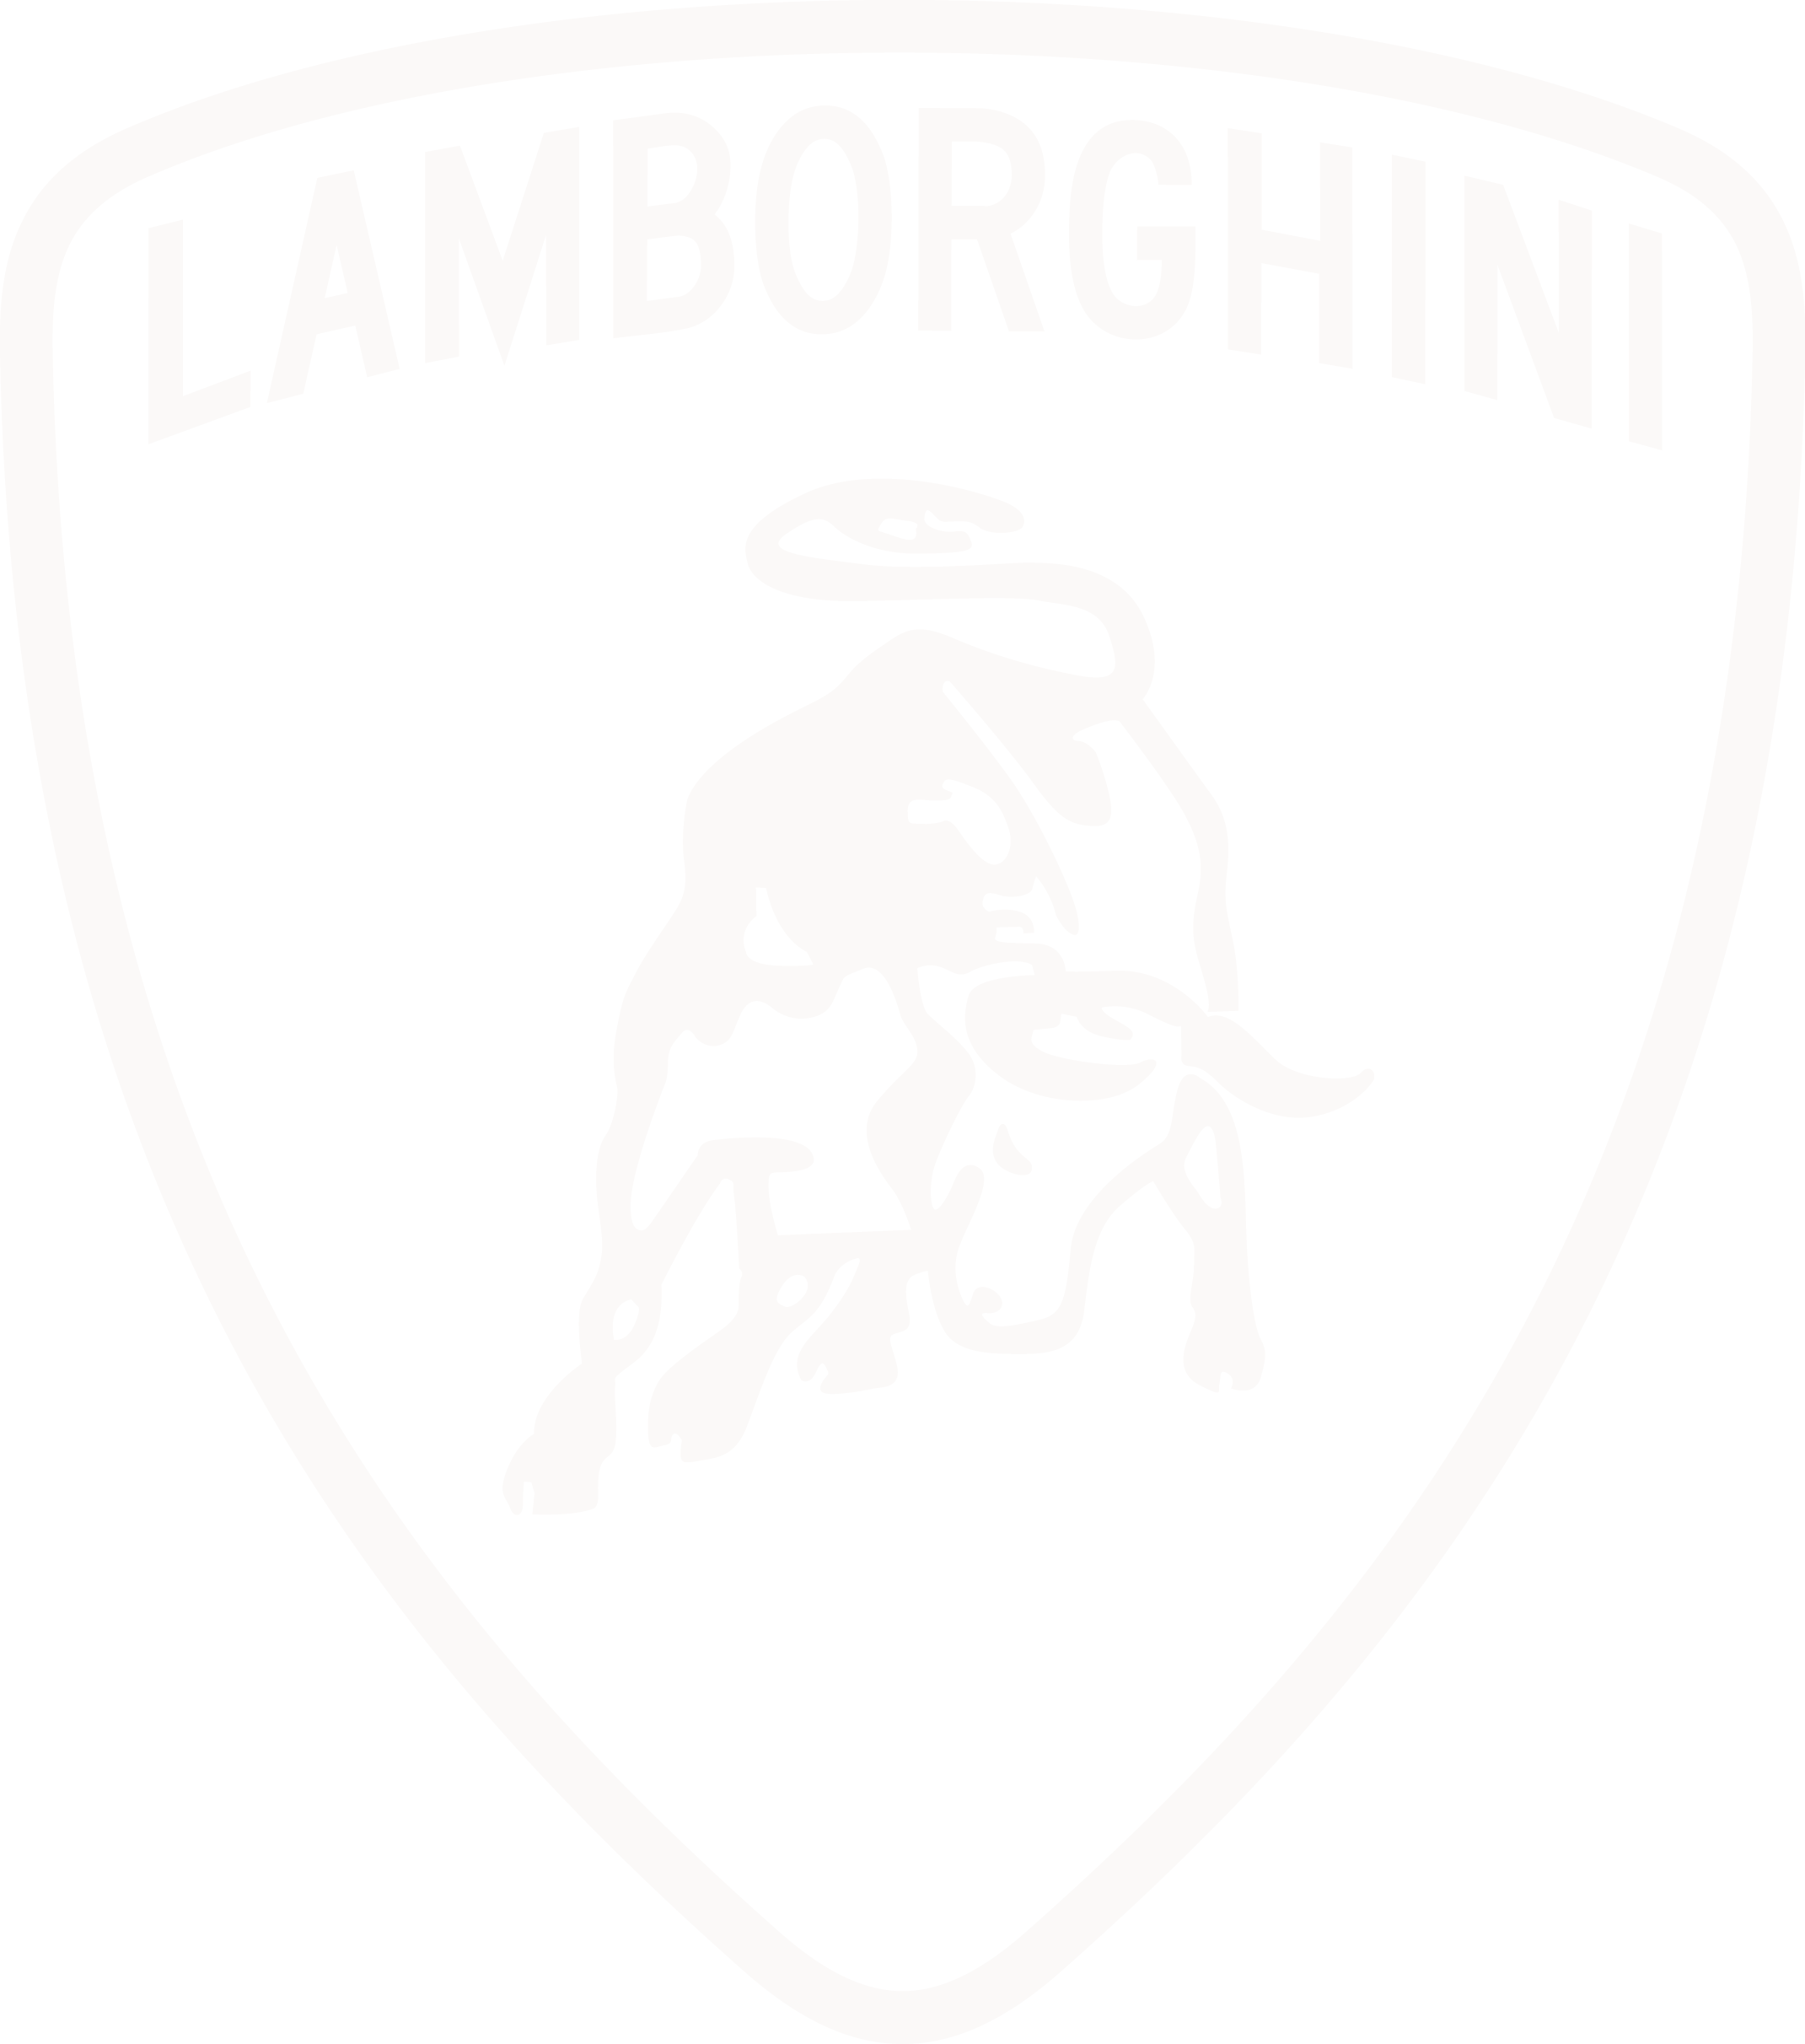 205-2055454_lamborghini-logo-dots-source-lamborghini-black-and-white